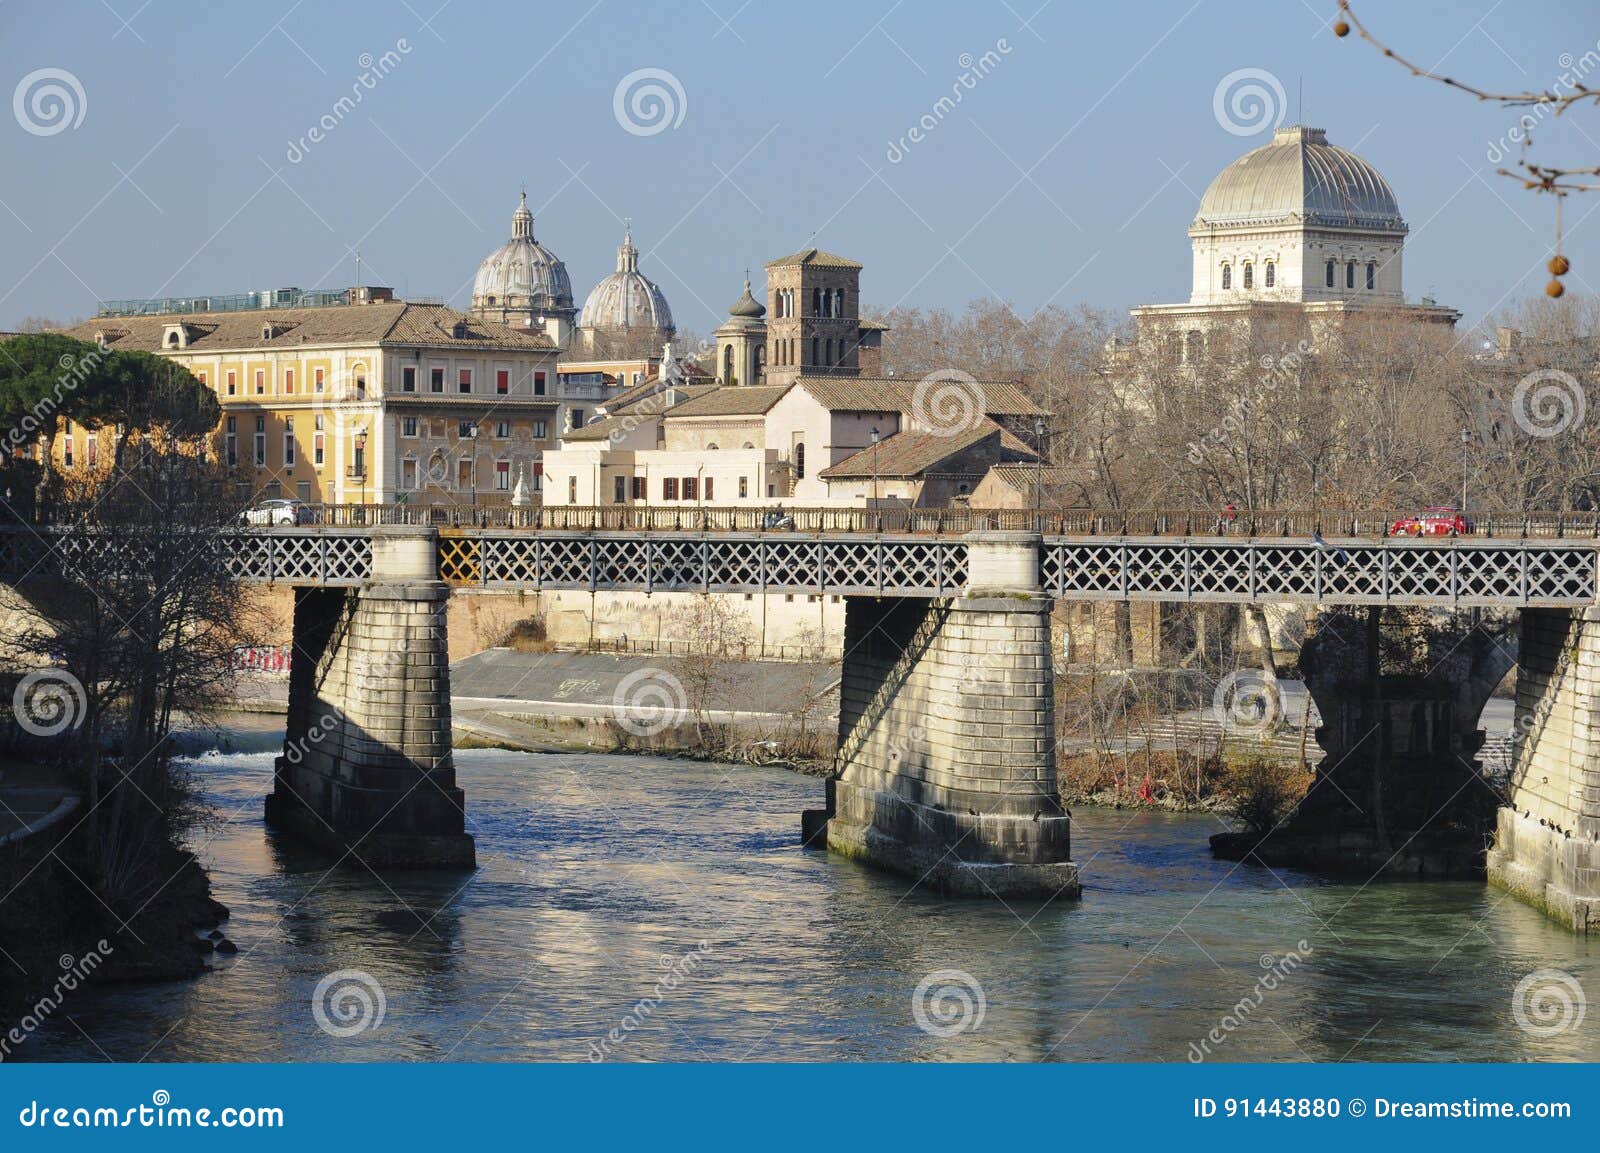 rome, bridge over the river